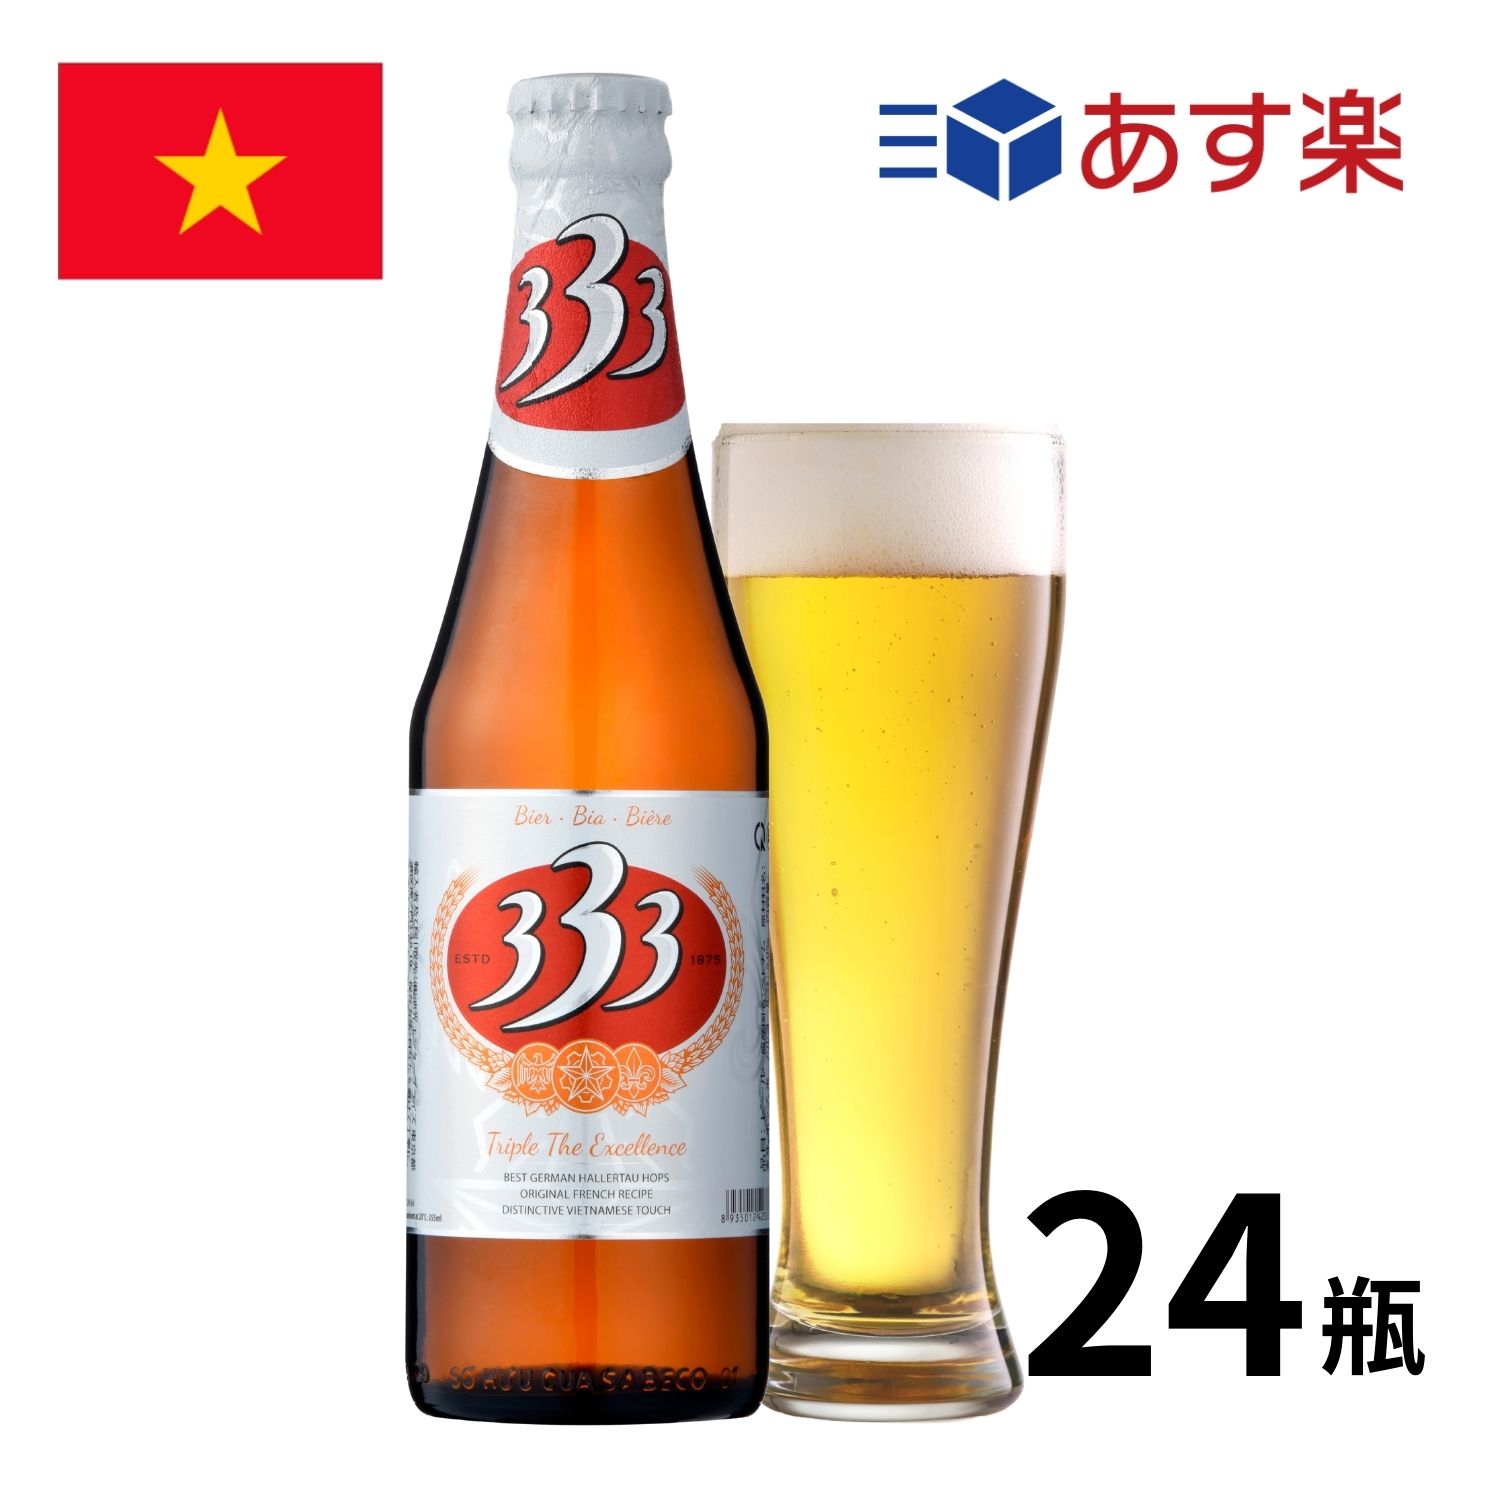 ［あす楽］ベトナム 333ビール瓶 (355ml x 24本入)<br> ビール クラフトビール 333ビール 333瓶 バーバーバ― 瓶  海外ビール ベトナム vietnam beer 正規輸入品  あす楽